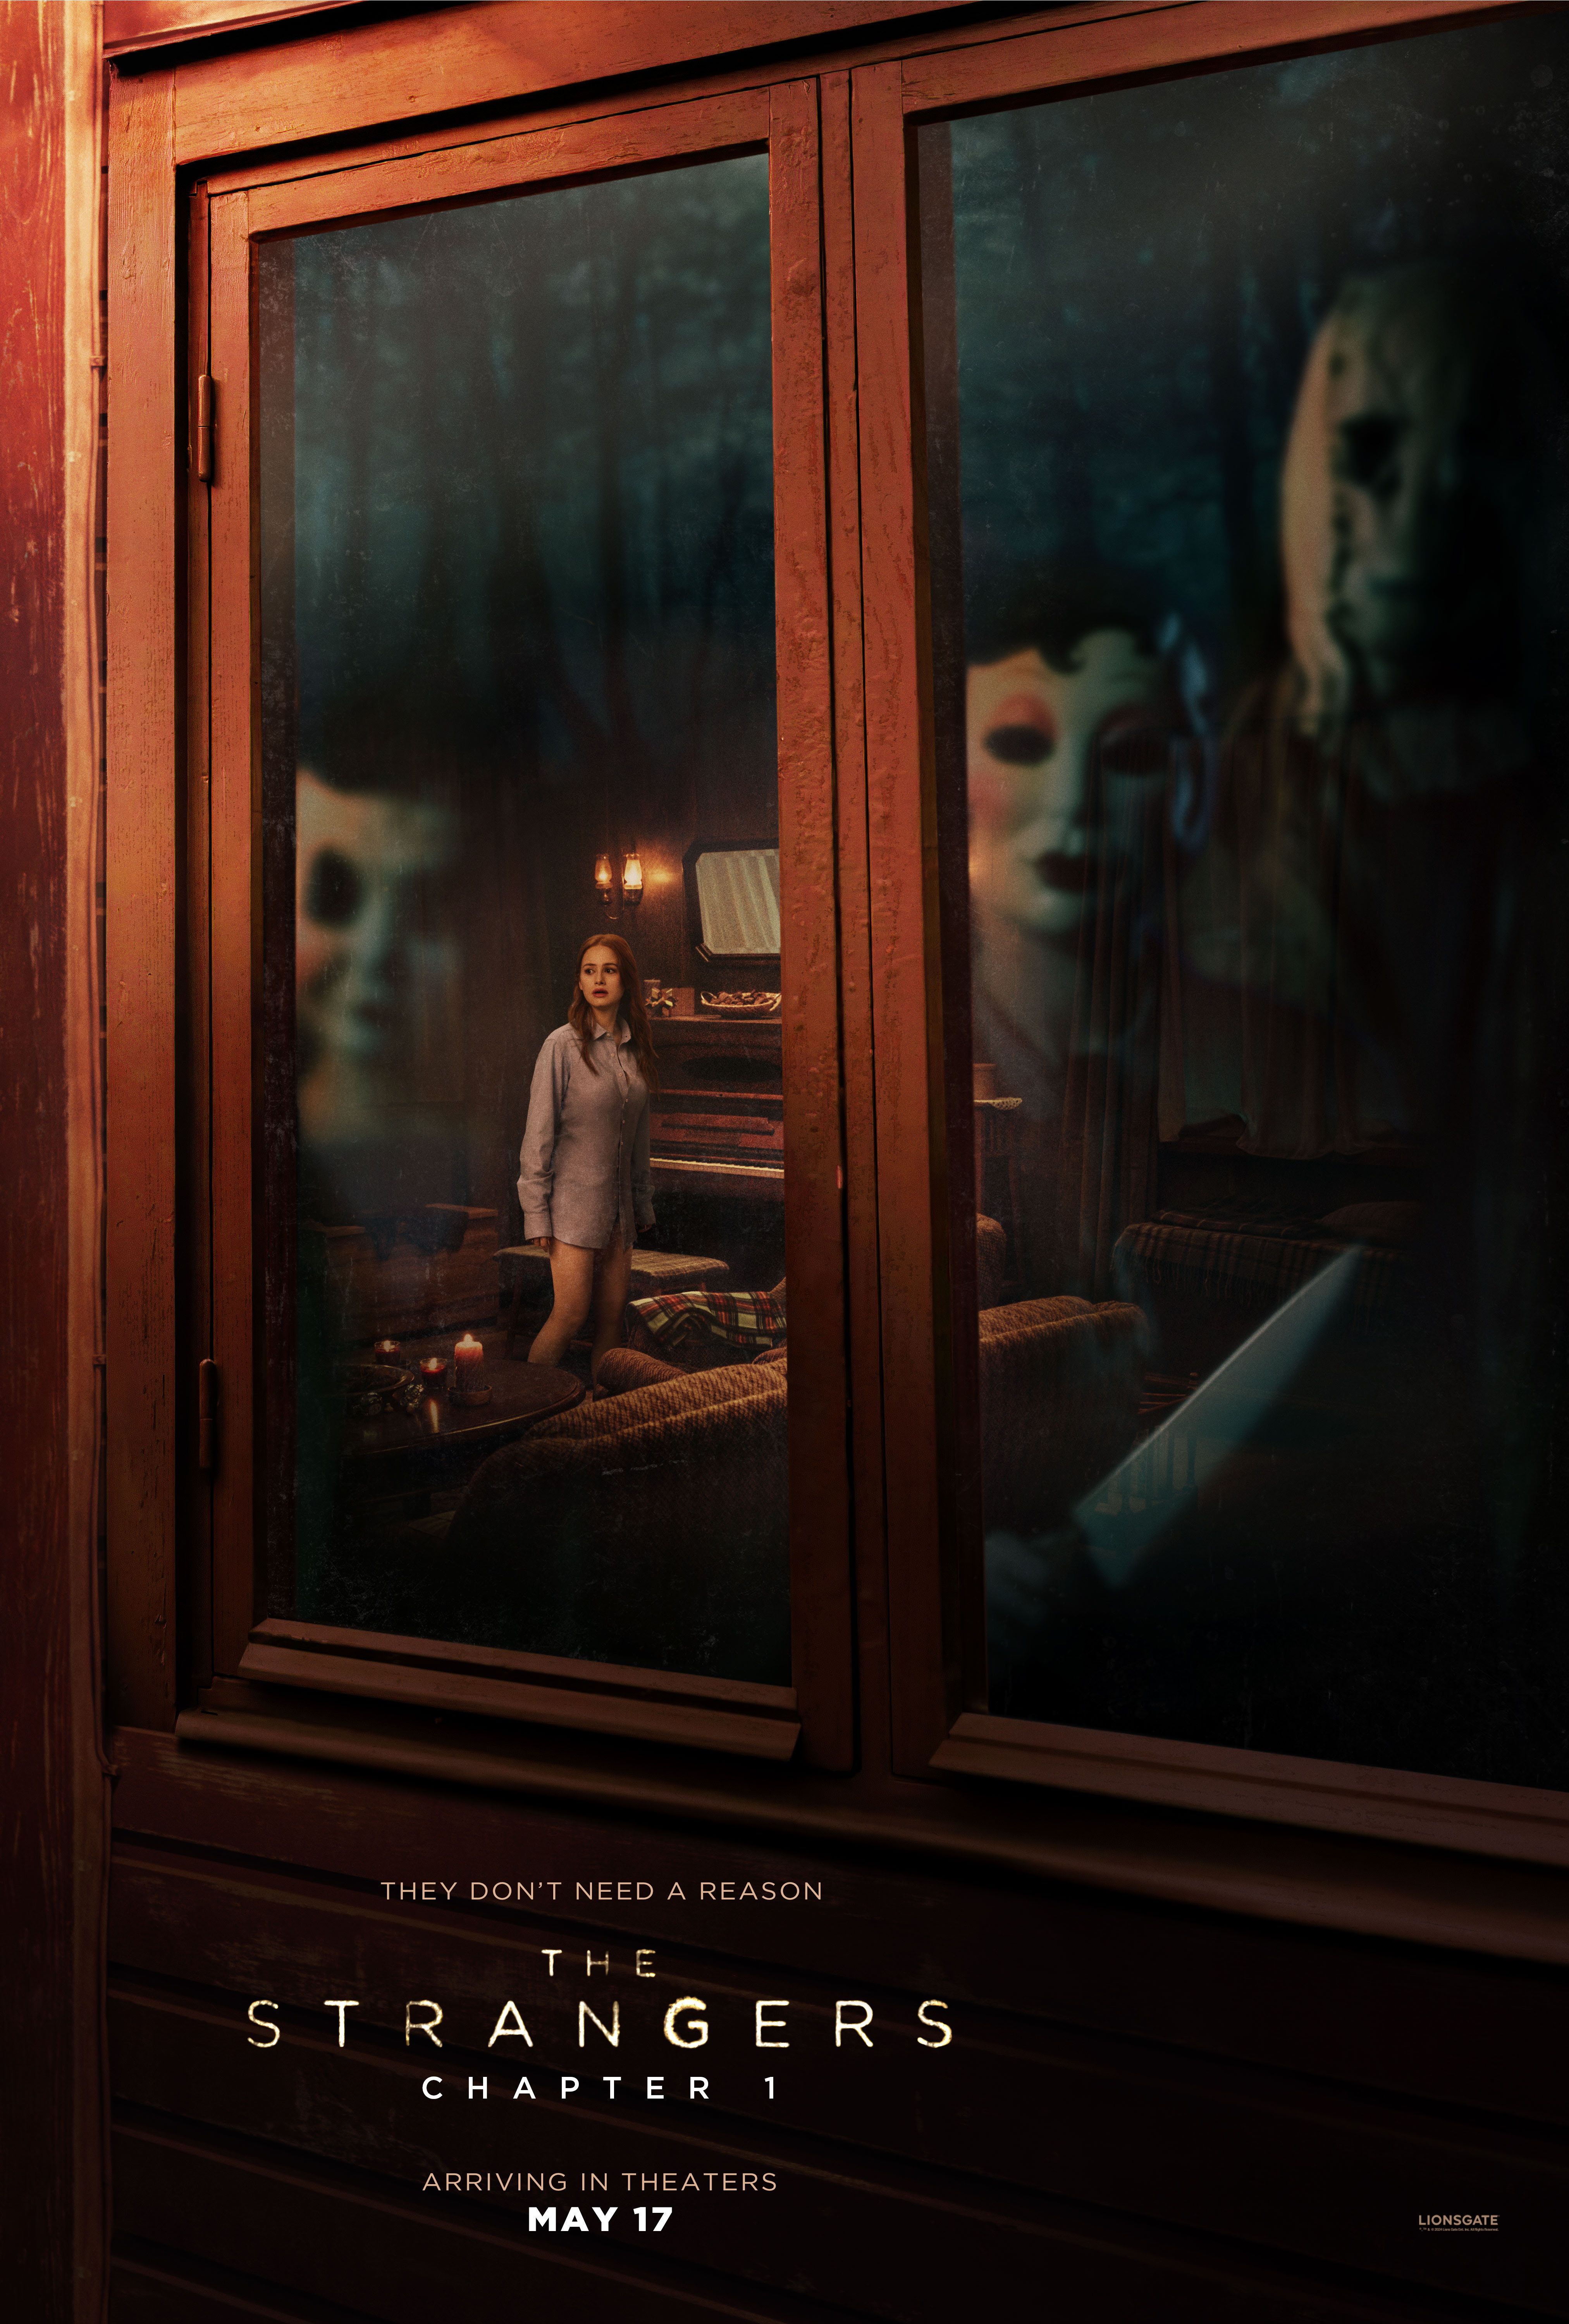 El cartel del primer capítulo de The Strangers muestra a tres personajes enmascarados mirando por una ventana.